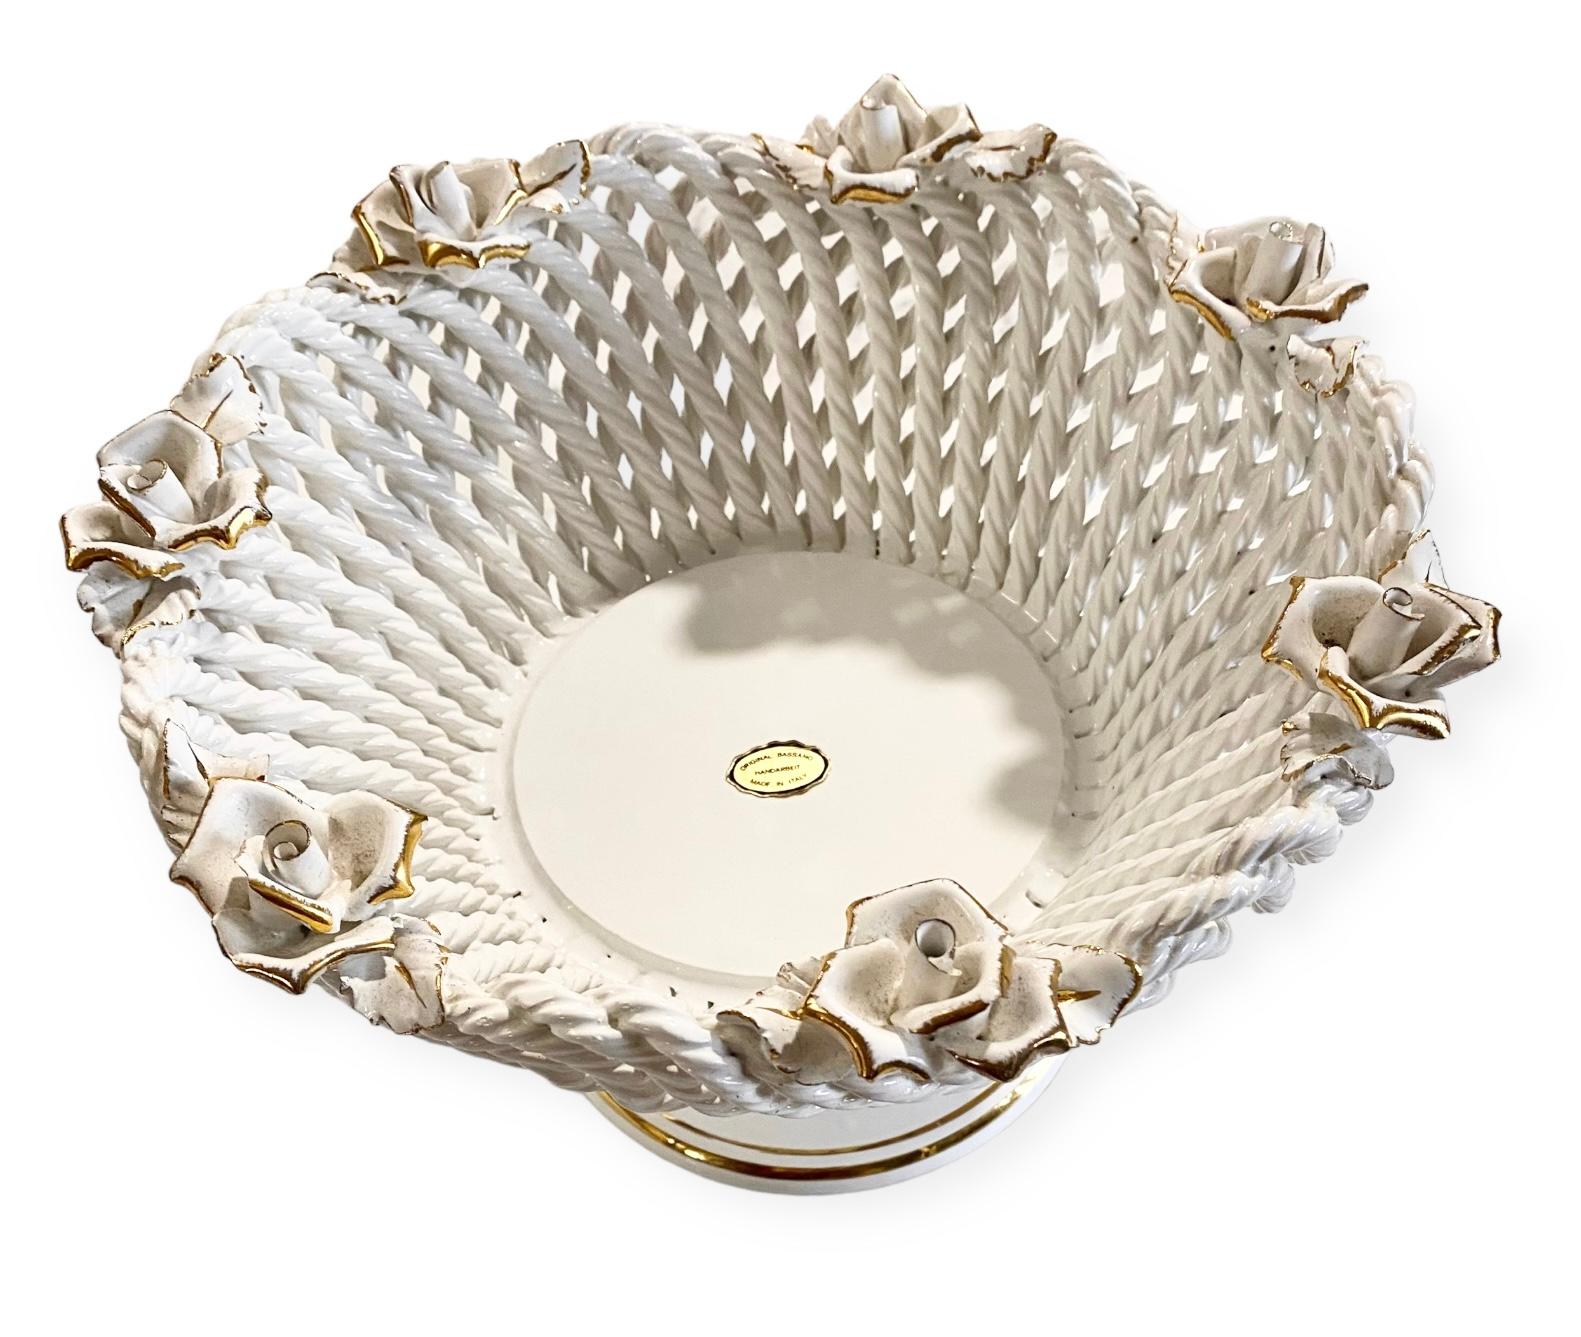 Eine hübsche, netzartige, weiße Bassano-Keramik-Obstschale mit vergoldeten Rosen als Mittelstück. Der perfekte Touch für ein gut ausgestattetes Zimmer.

In Bassano werden seit 300 Jahren Keramiken hergestellt. Seit dem 17. Jahrhundert entwickelte